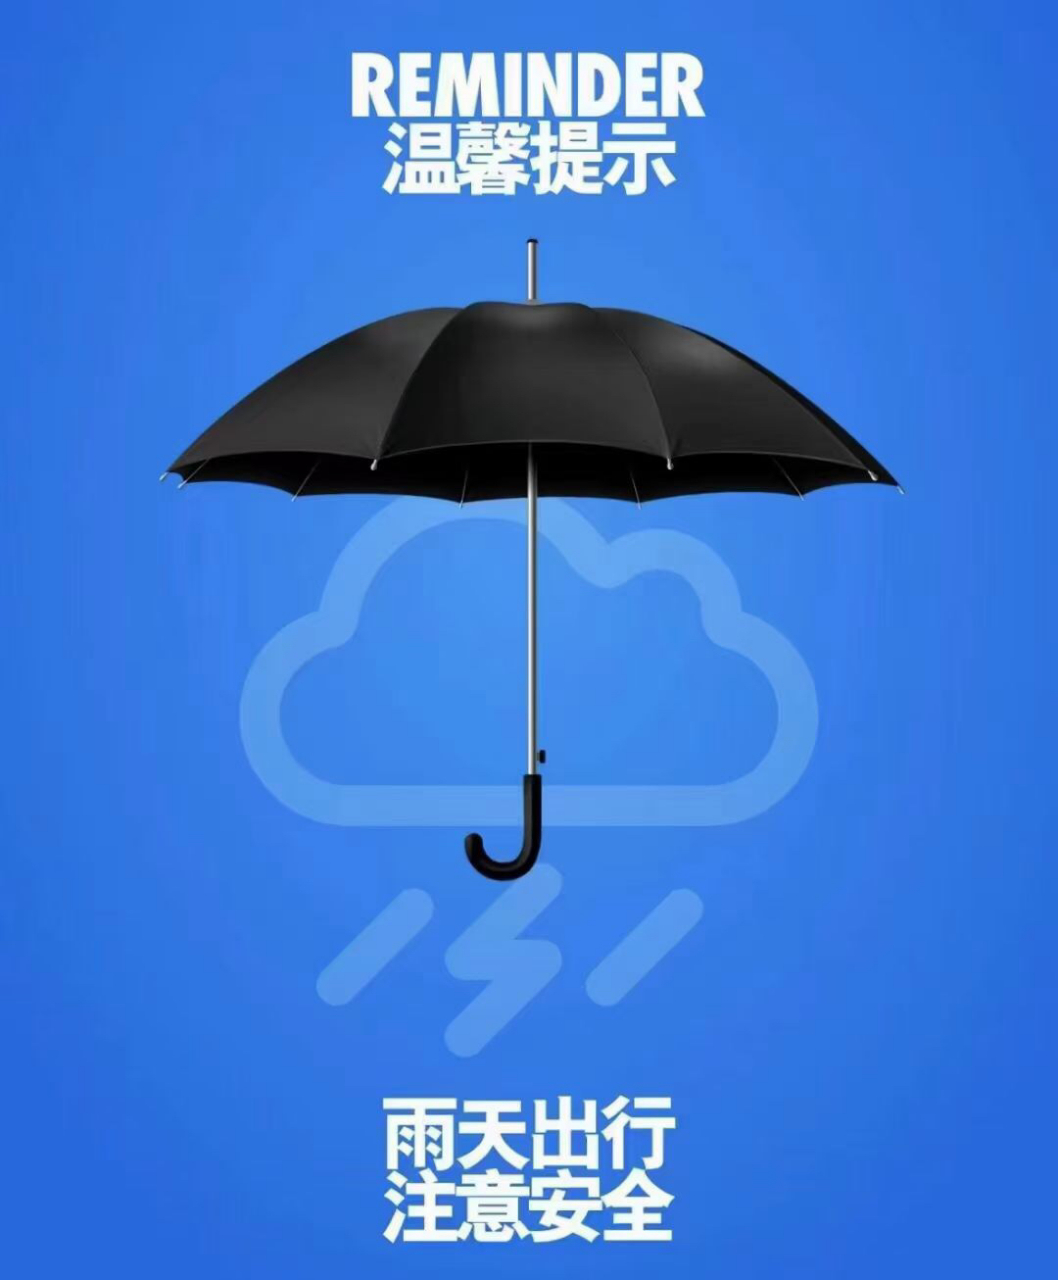 温馨提示:雨天出行,出门带伞,注意安全7415